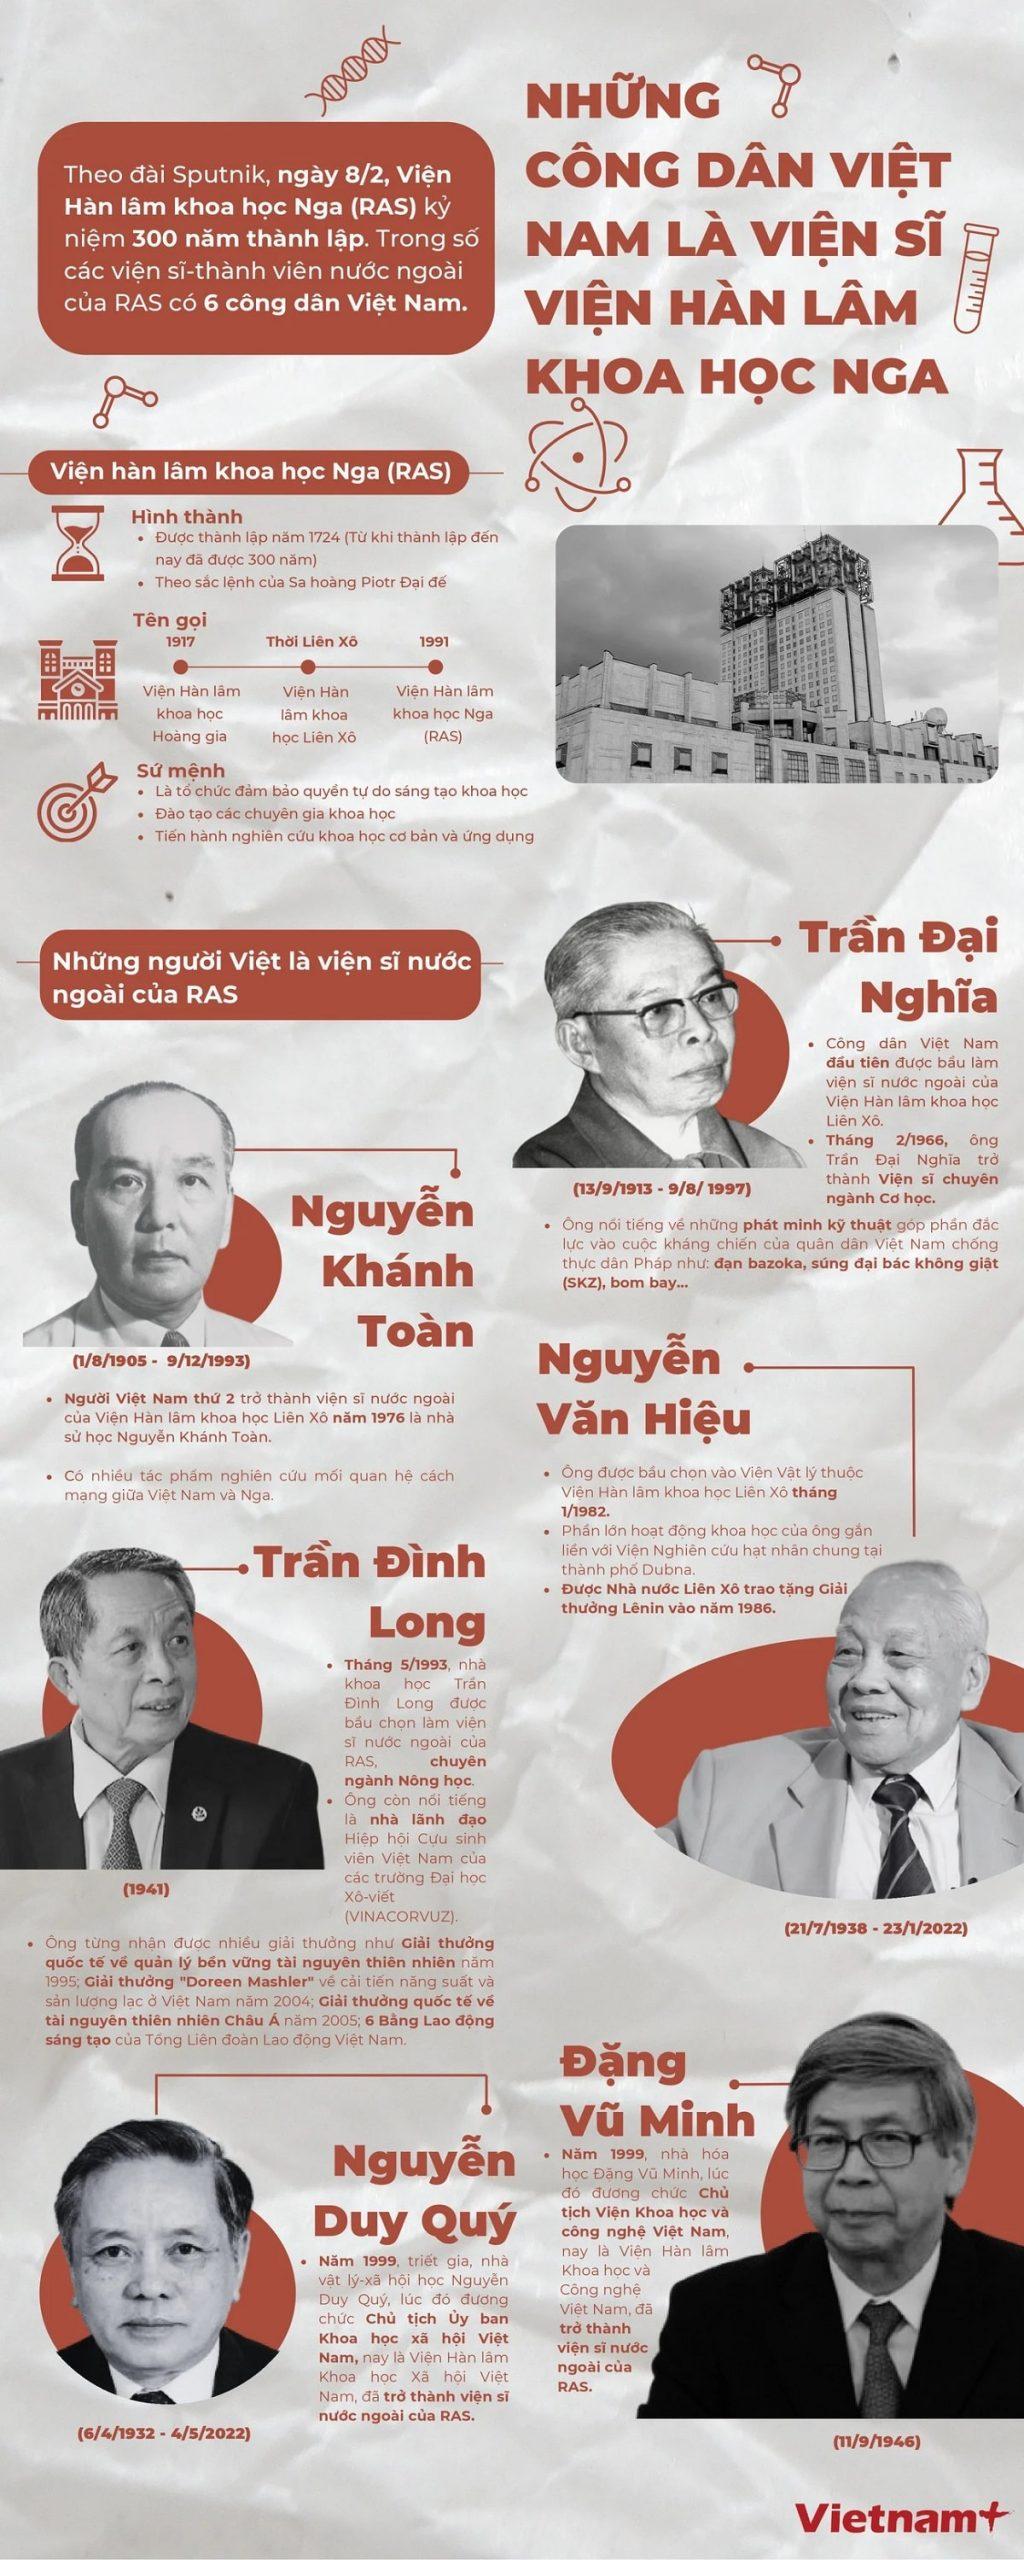 vinh danh 6 nguoi Viet min scaled - Viện Hàn Lâm Khoa học Nga vinh danh 6 người Việt dịp kỷ niệm 300 năm thành lập